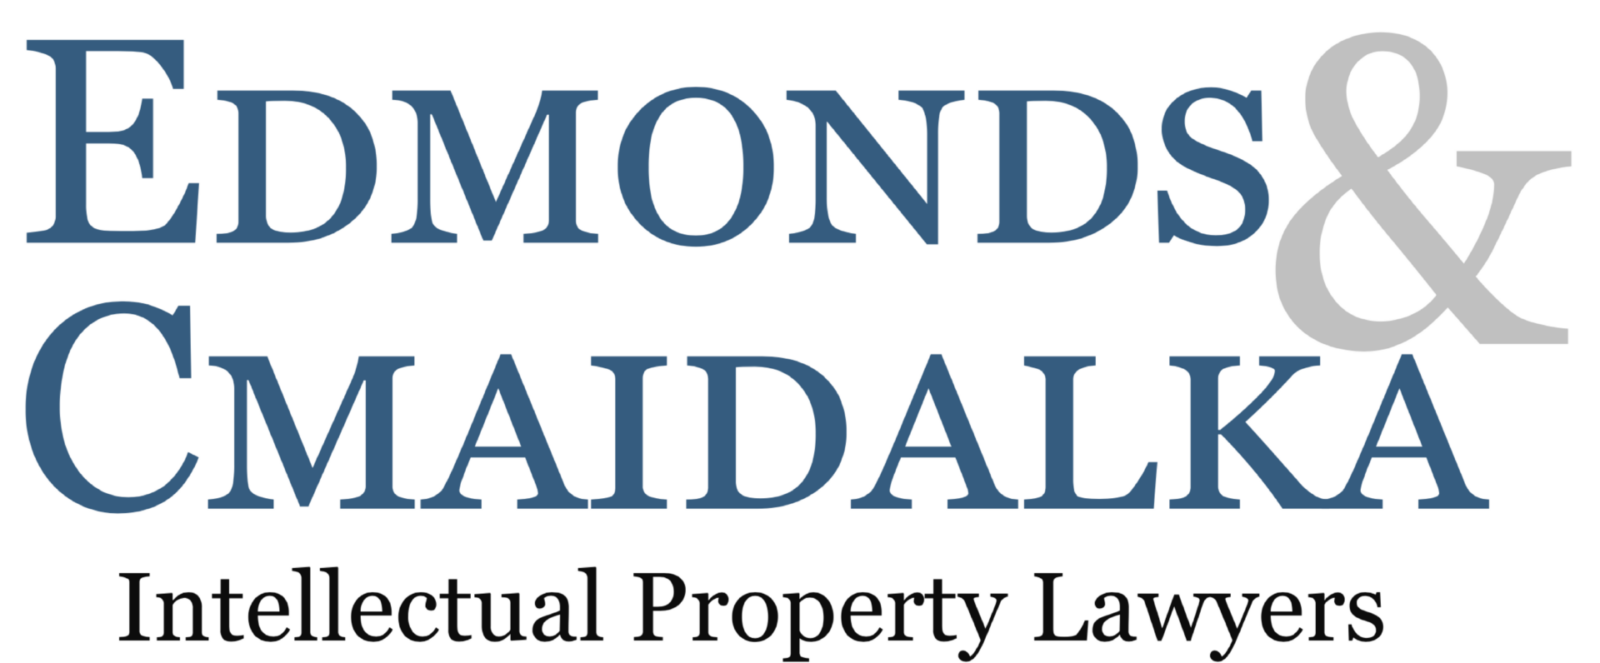 Edmonds & Cmaidalka; Intellectual Property Lawyers